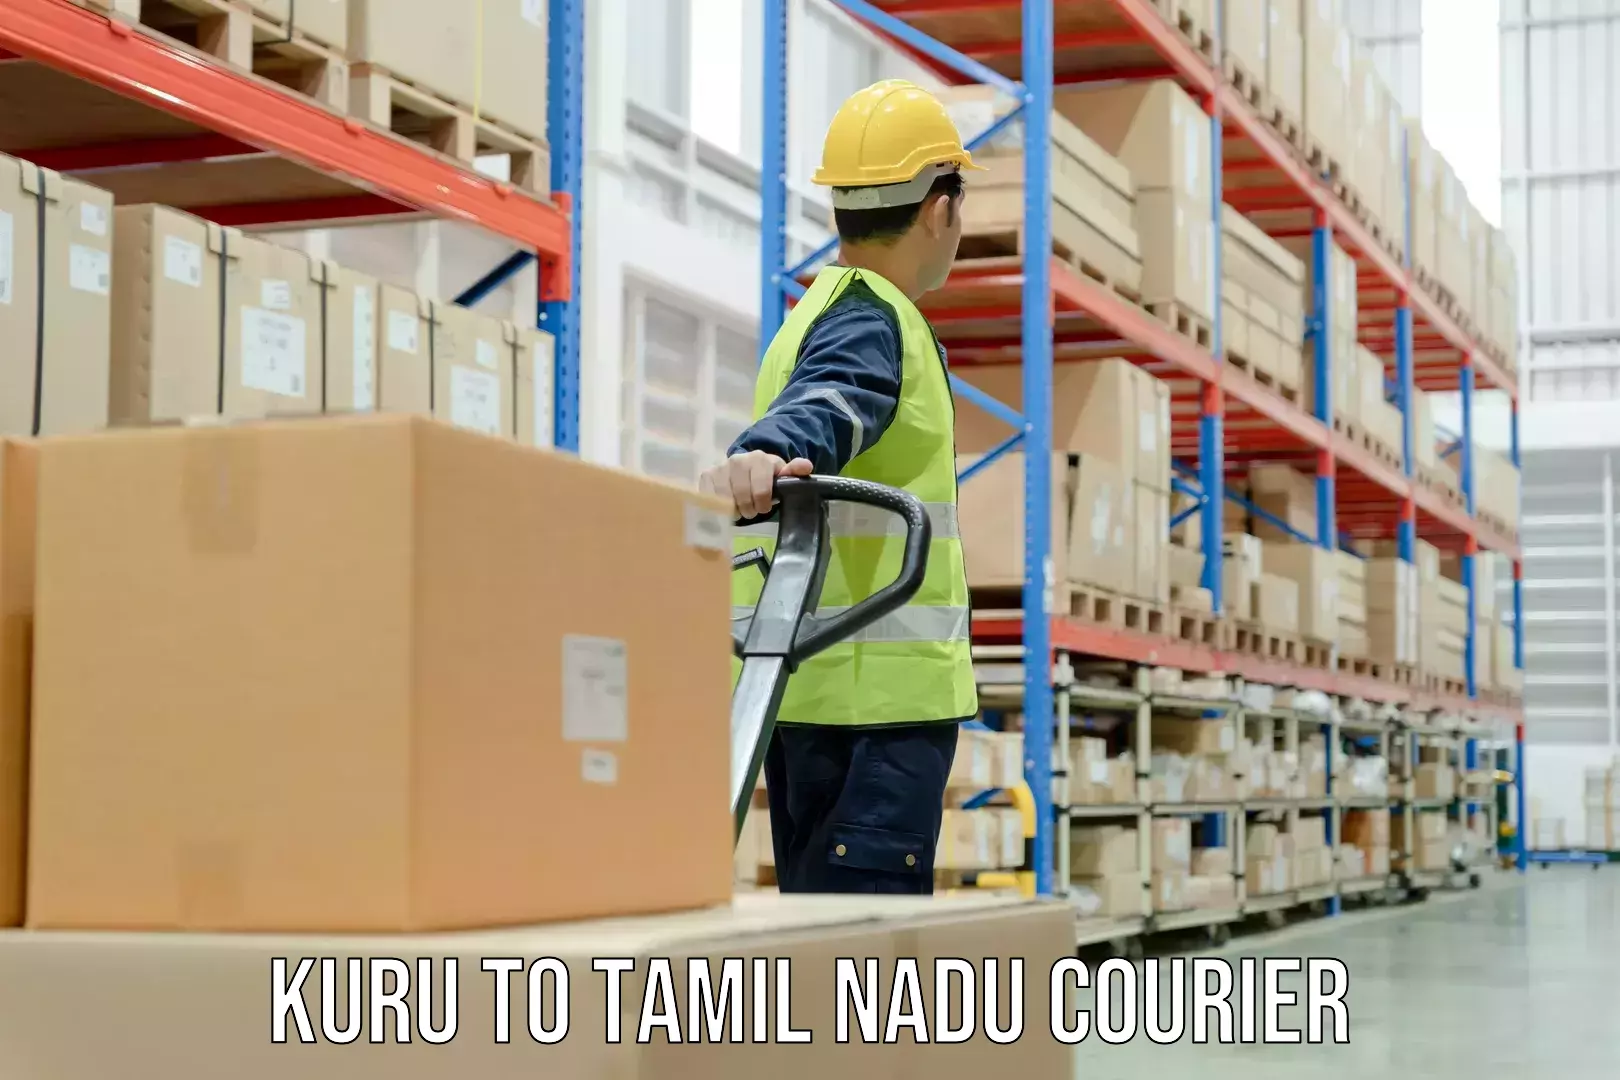 Specialized shipment handling in Kuru to Thiruvadanai